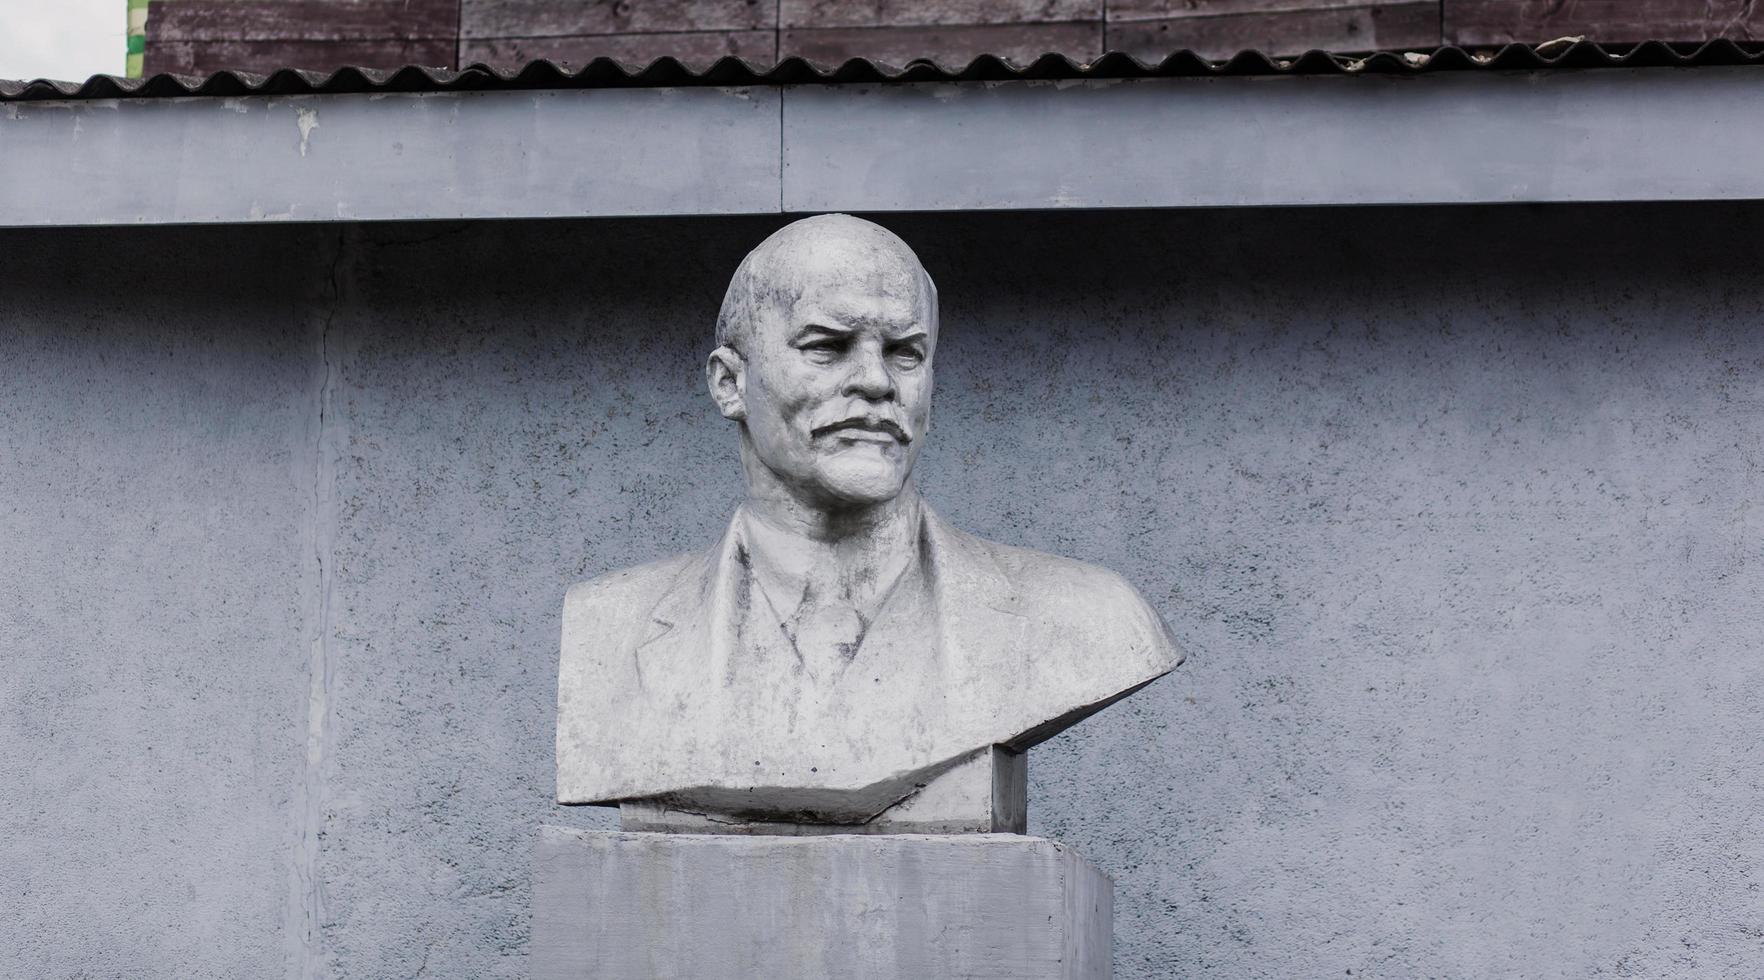 minsk, bielorrusia, mayo de 2022 - busto de lenin en la ciudad foto